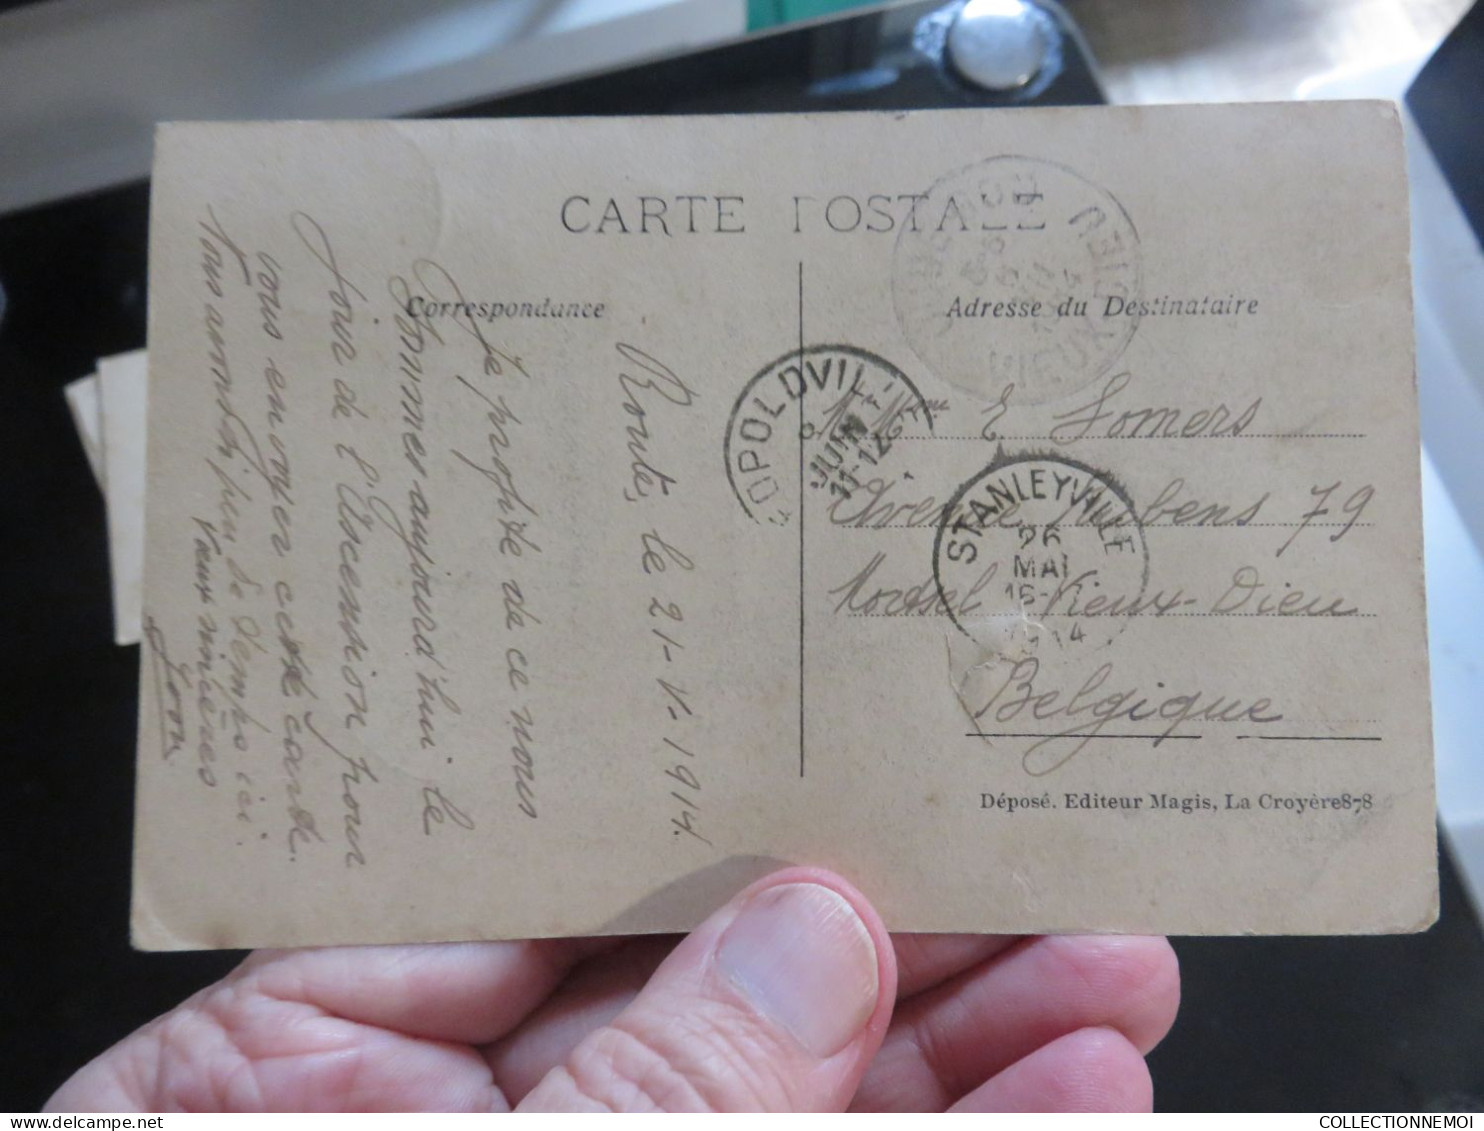 CONGO BELGE ,,,,,LOT DE cartes postales  A VOIR ET ETUDIER ,,,,plus timbres et oblitérations,,,, PRIX DERISOIRE